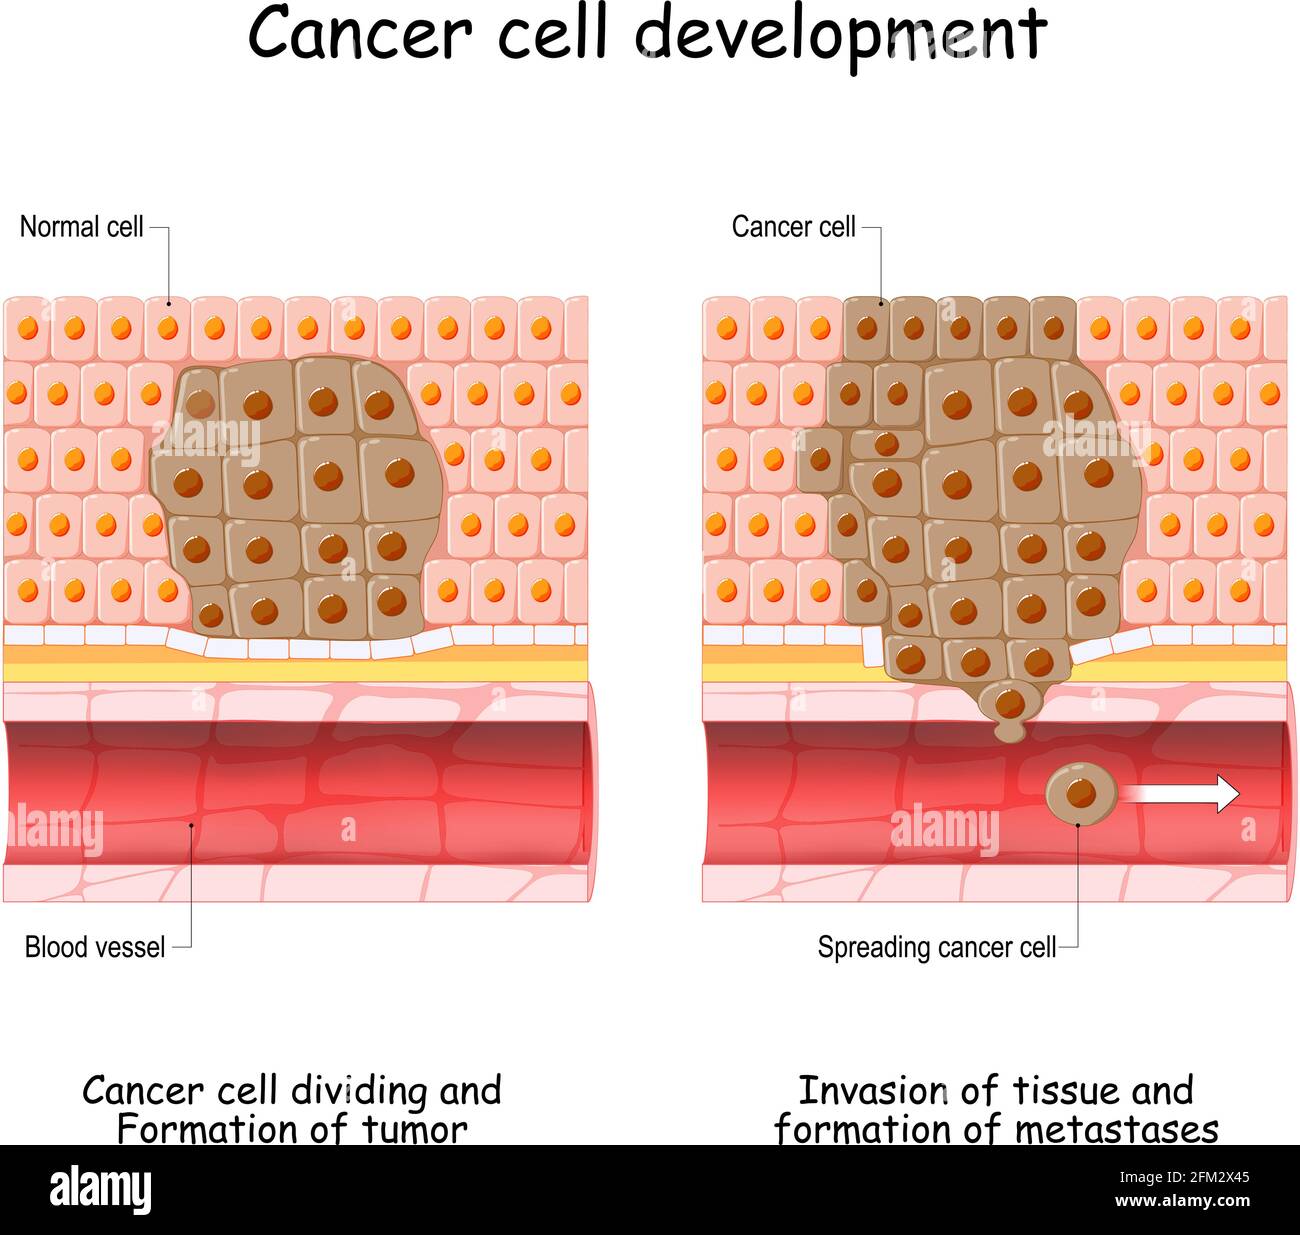 Le développement du cancer de la cellule normale à la formation de la tumeur, la propagation des cellules cancéreuses dans le flux sanguin, l'invasion d'autres tissus, et la formation de métastases Illustration de Vecteur